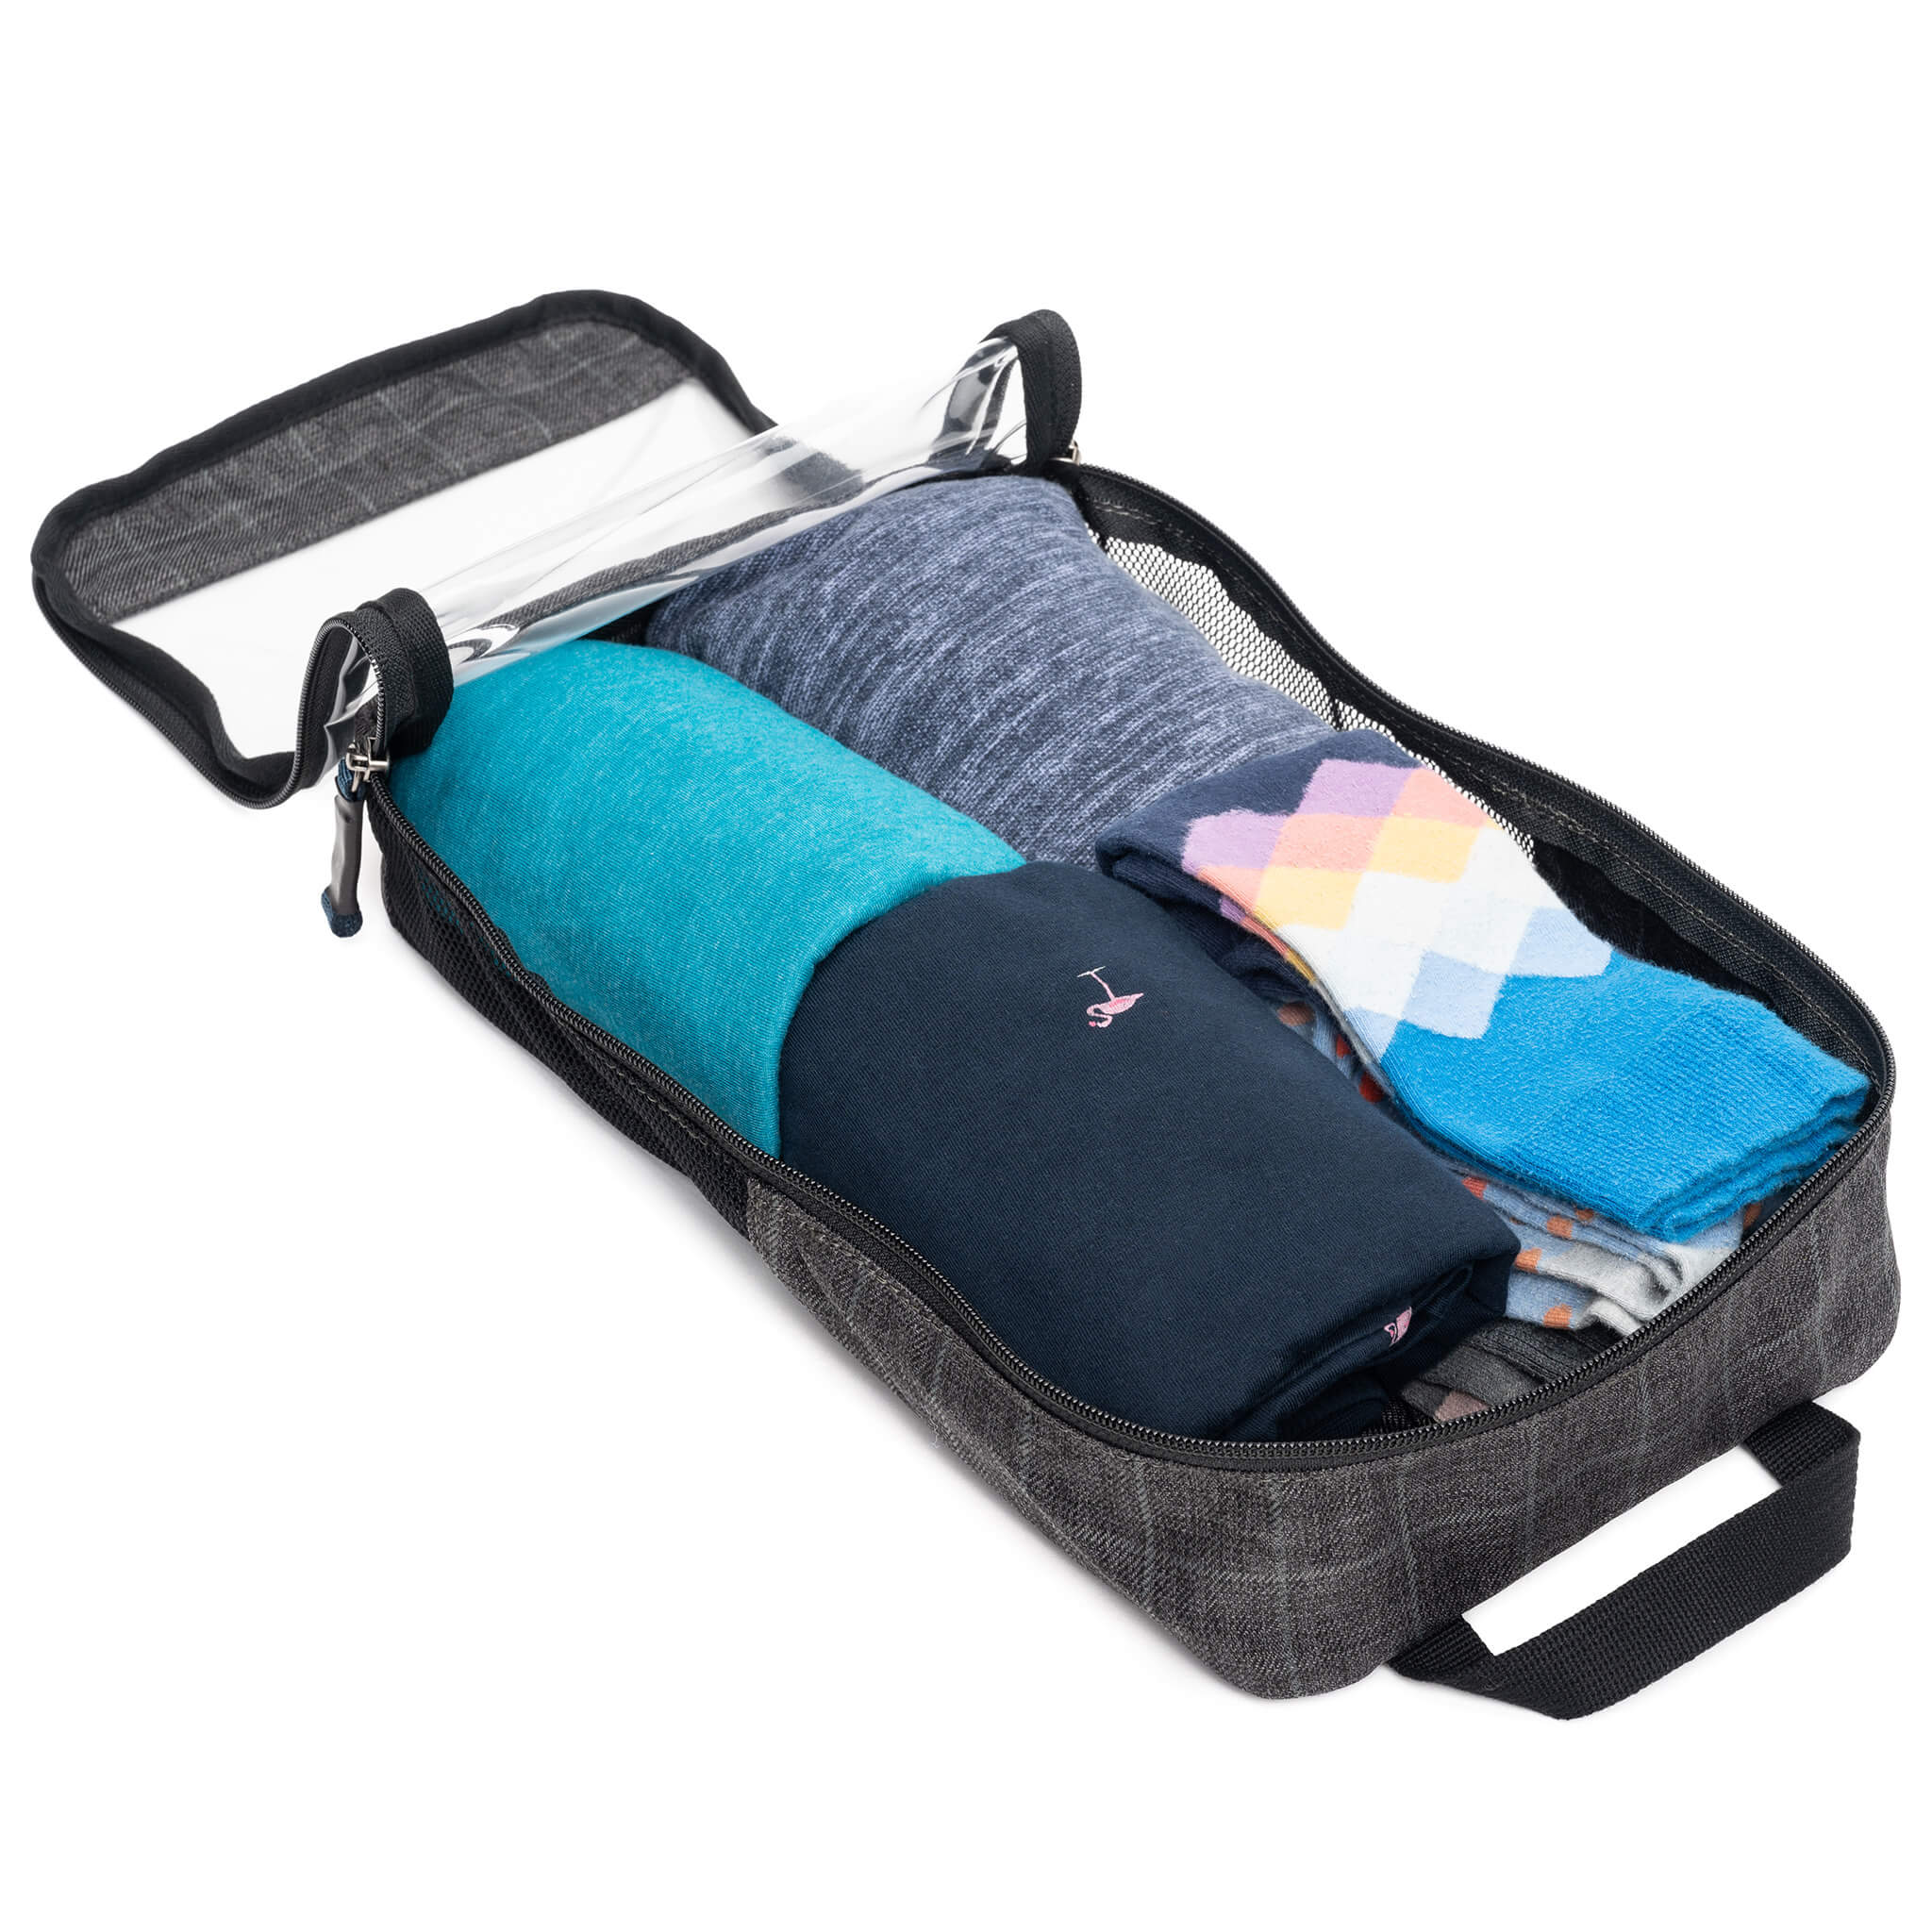 Clothing Cube - Medium for Travel Luggage Organization – Think Tank Photo